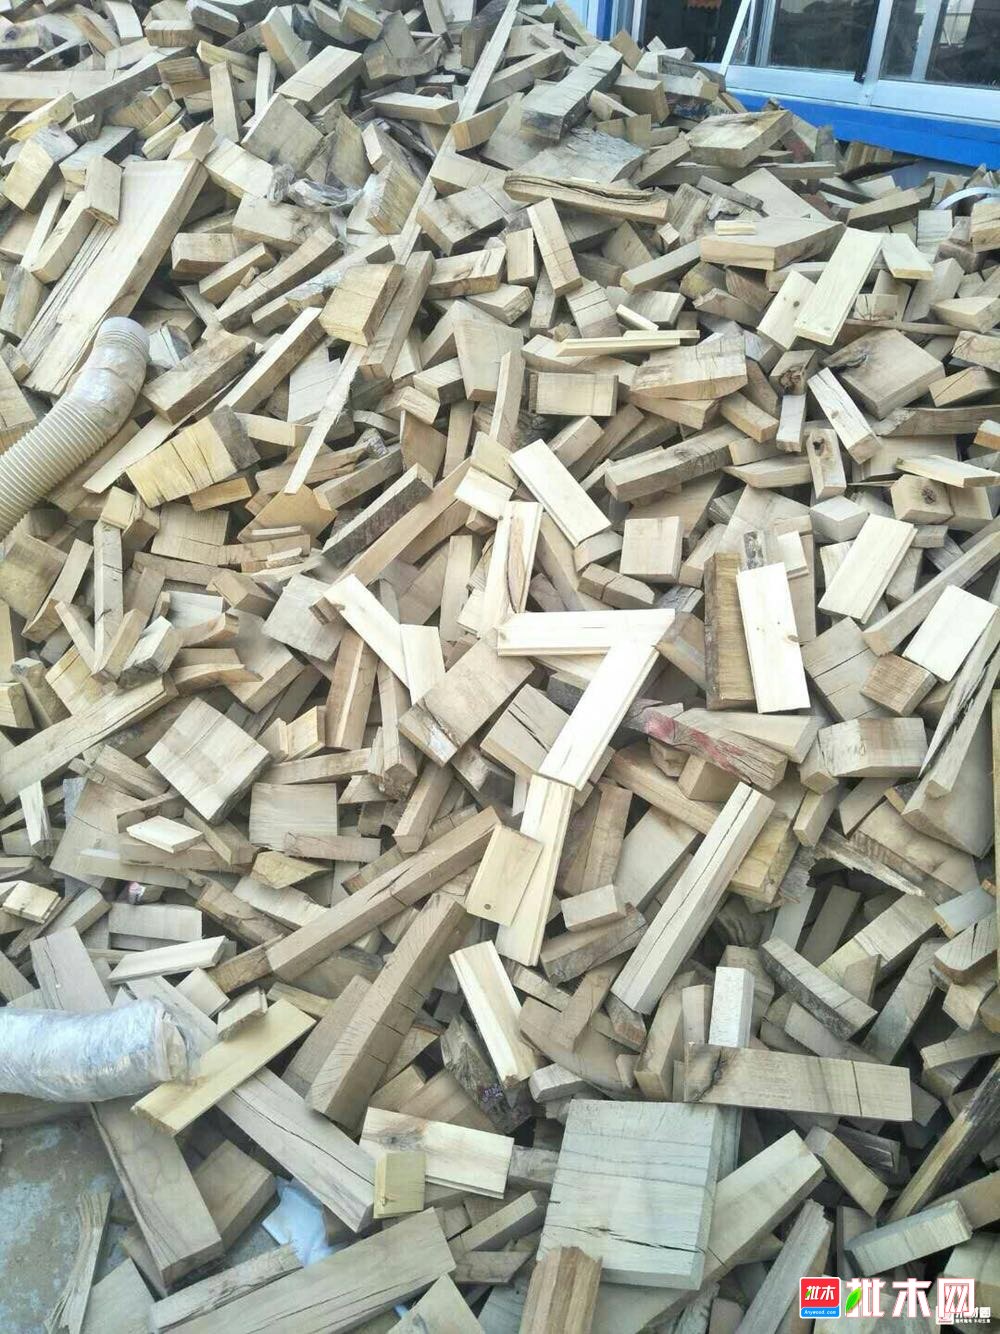 现有大量木材下脚料求收购 下脚料木材收购公司事务